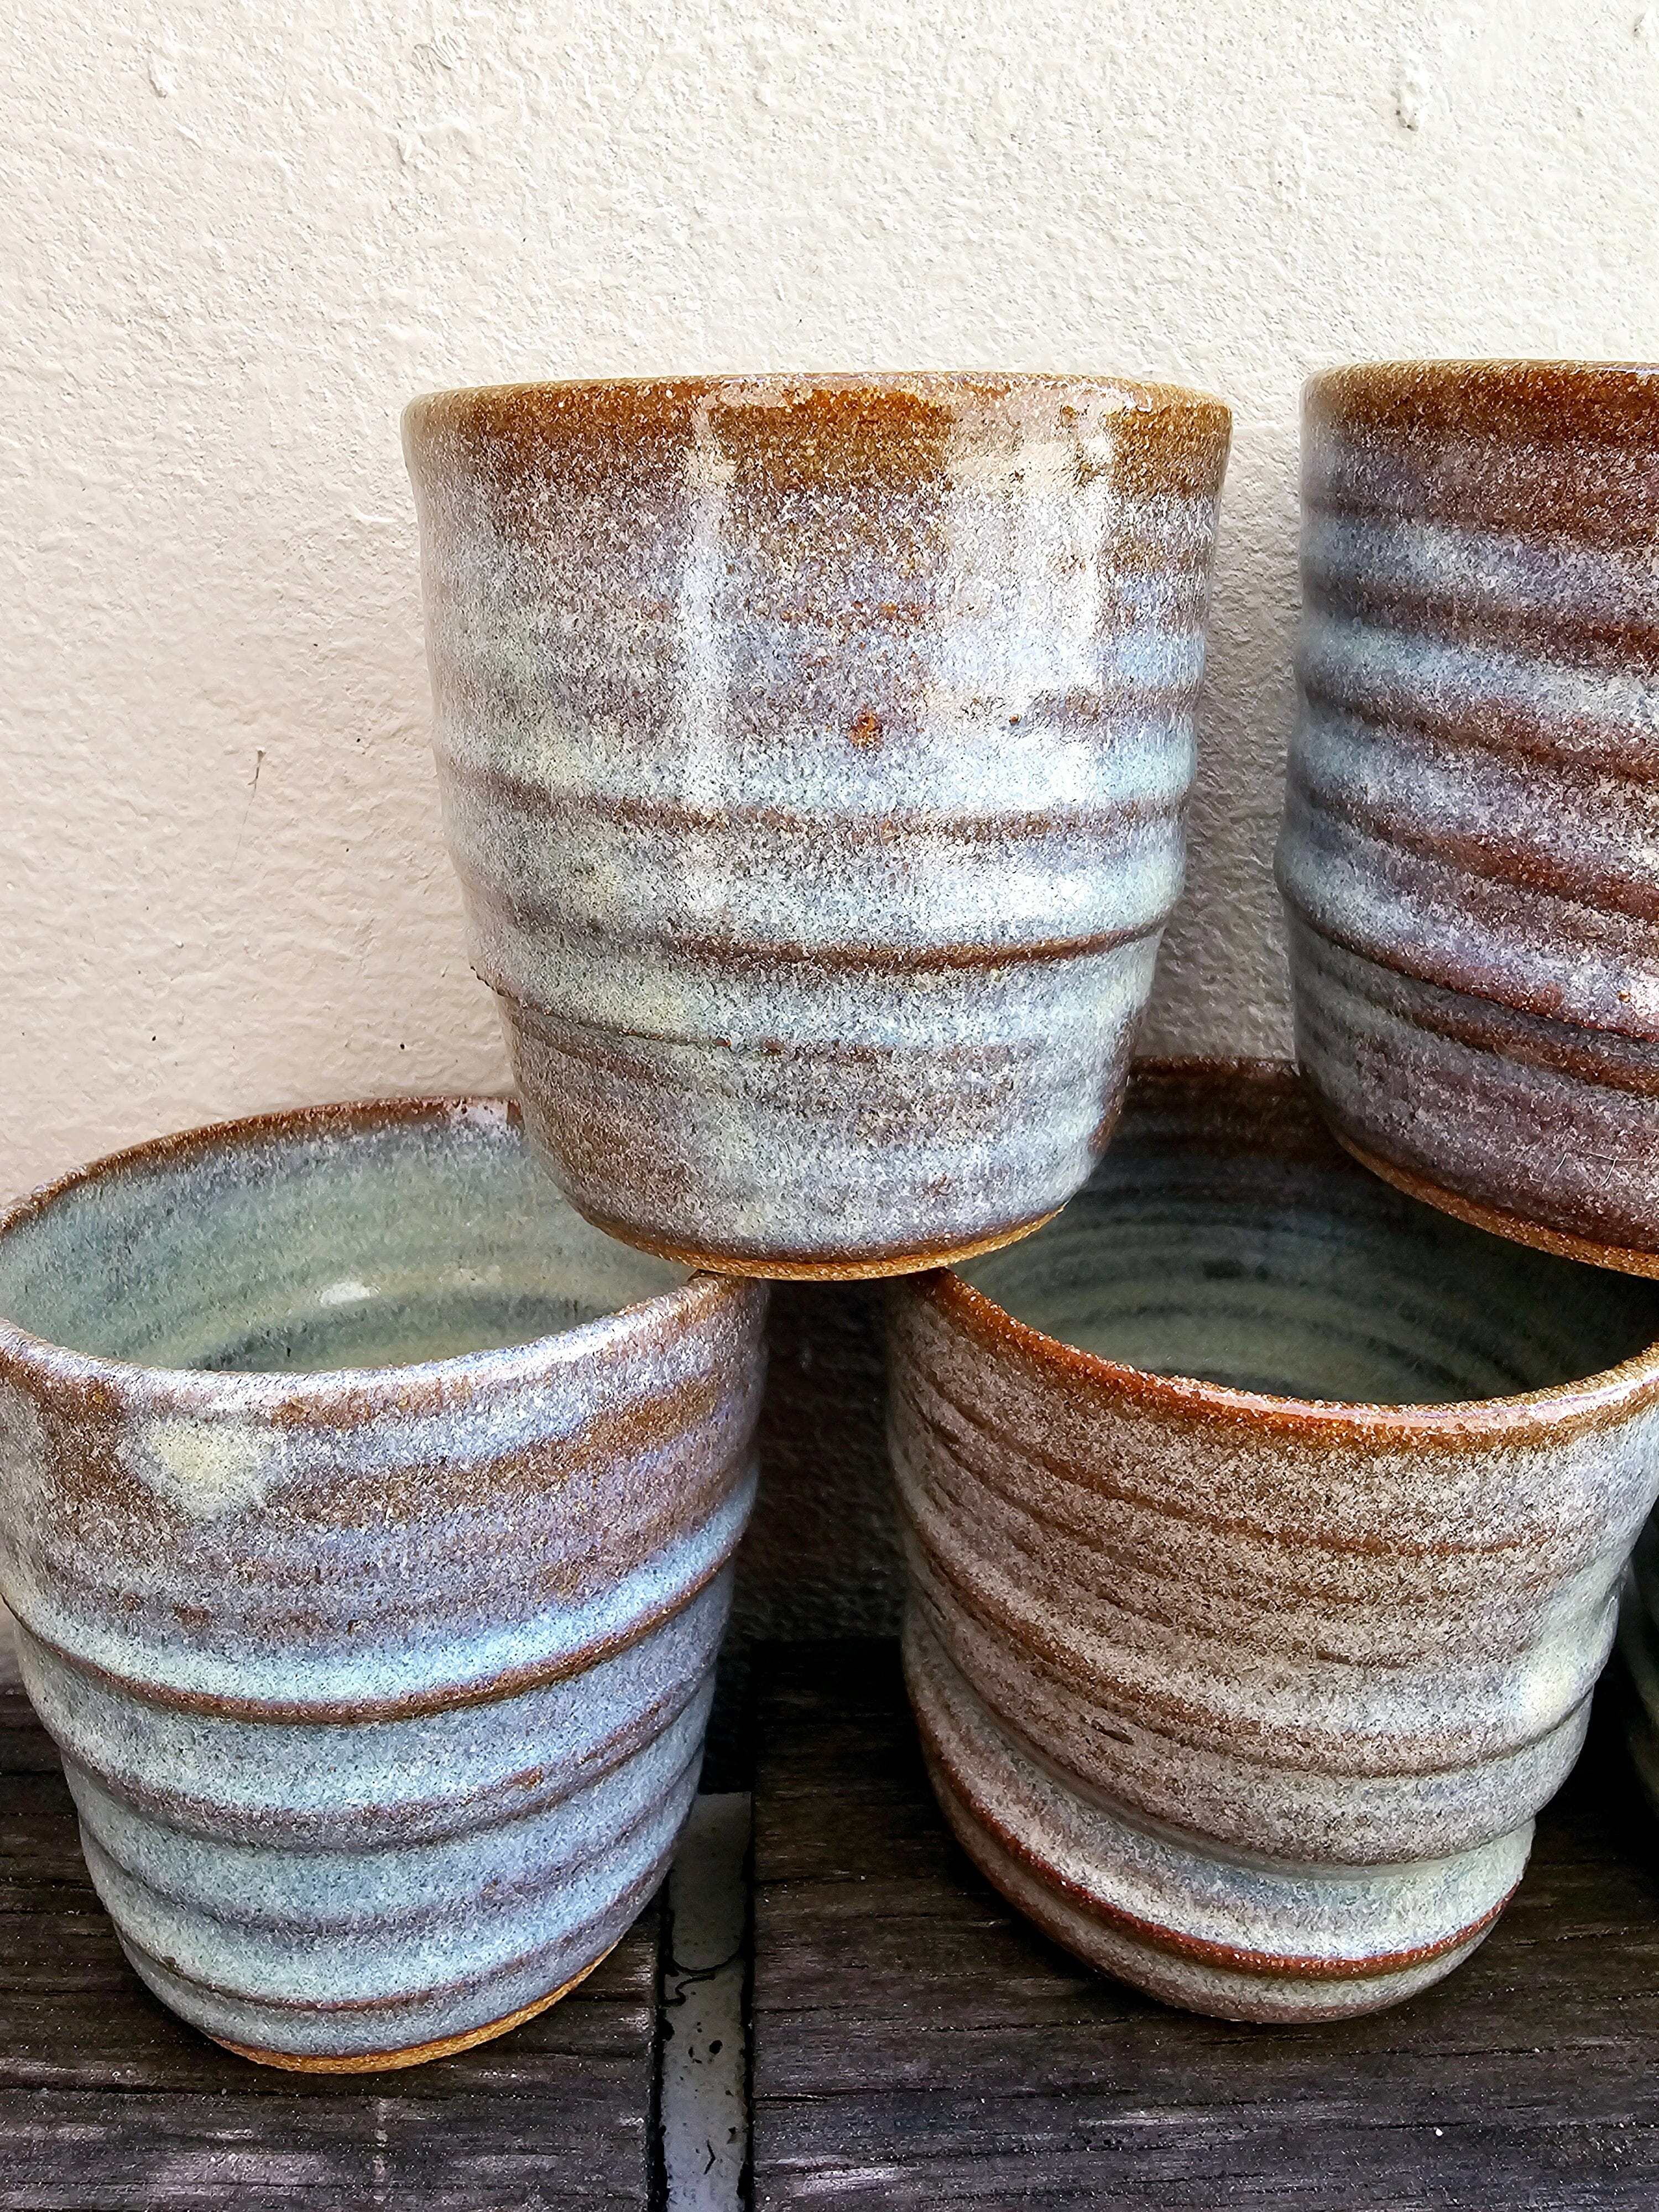 Handmade Ceramic Drinking Vessel - The Little Mud Room Mug The Little Mud Room 